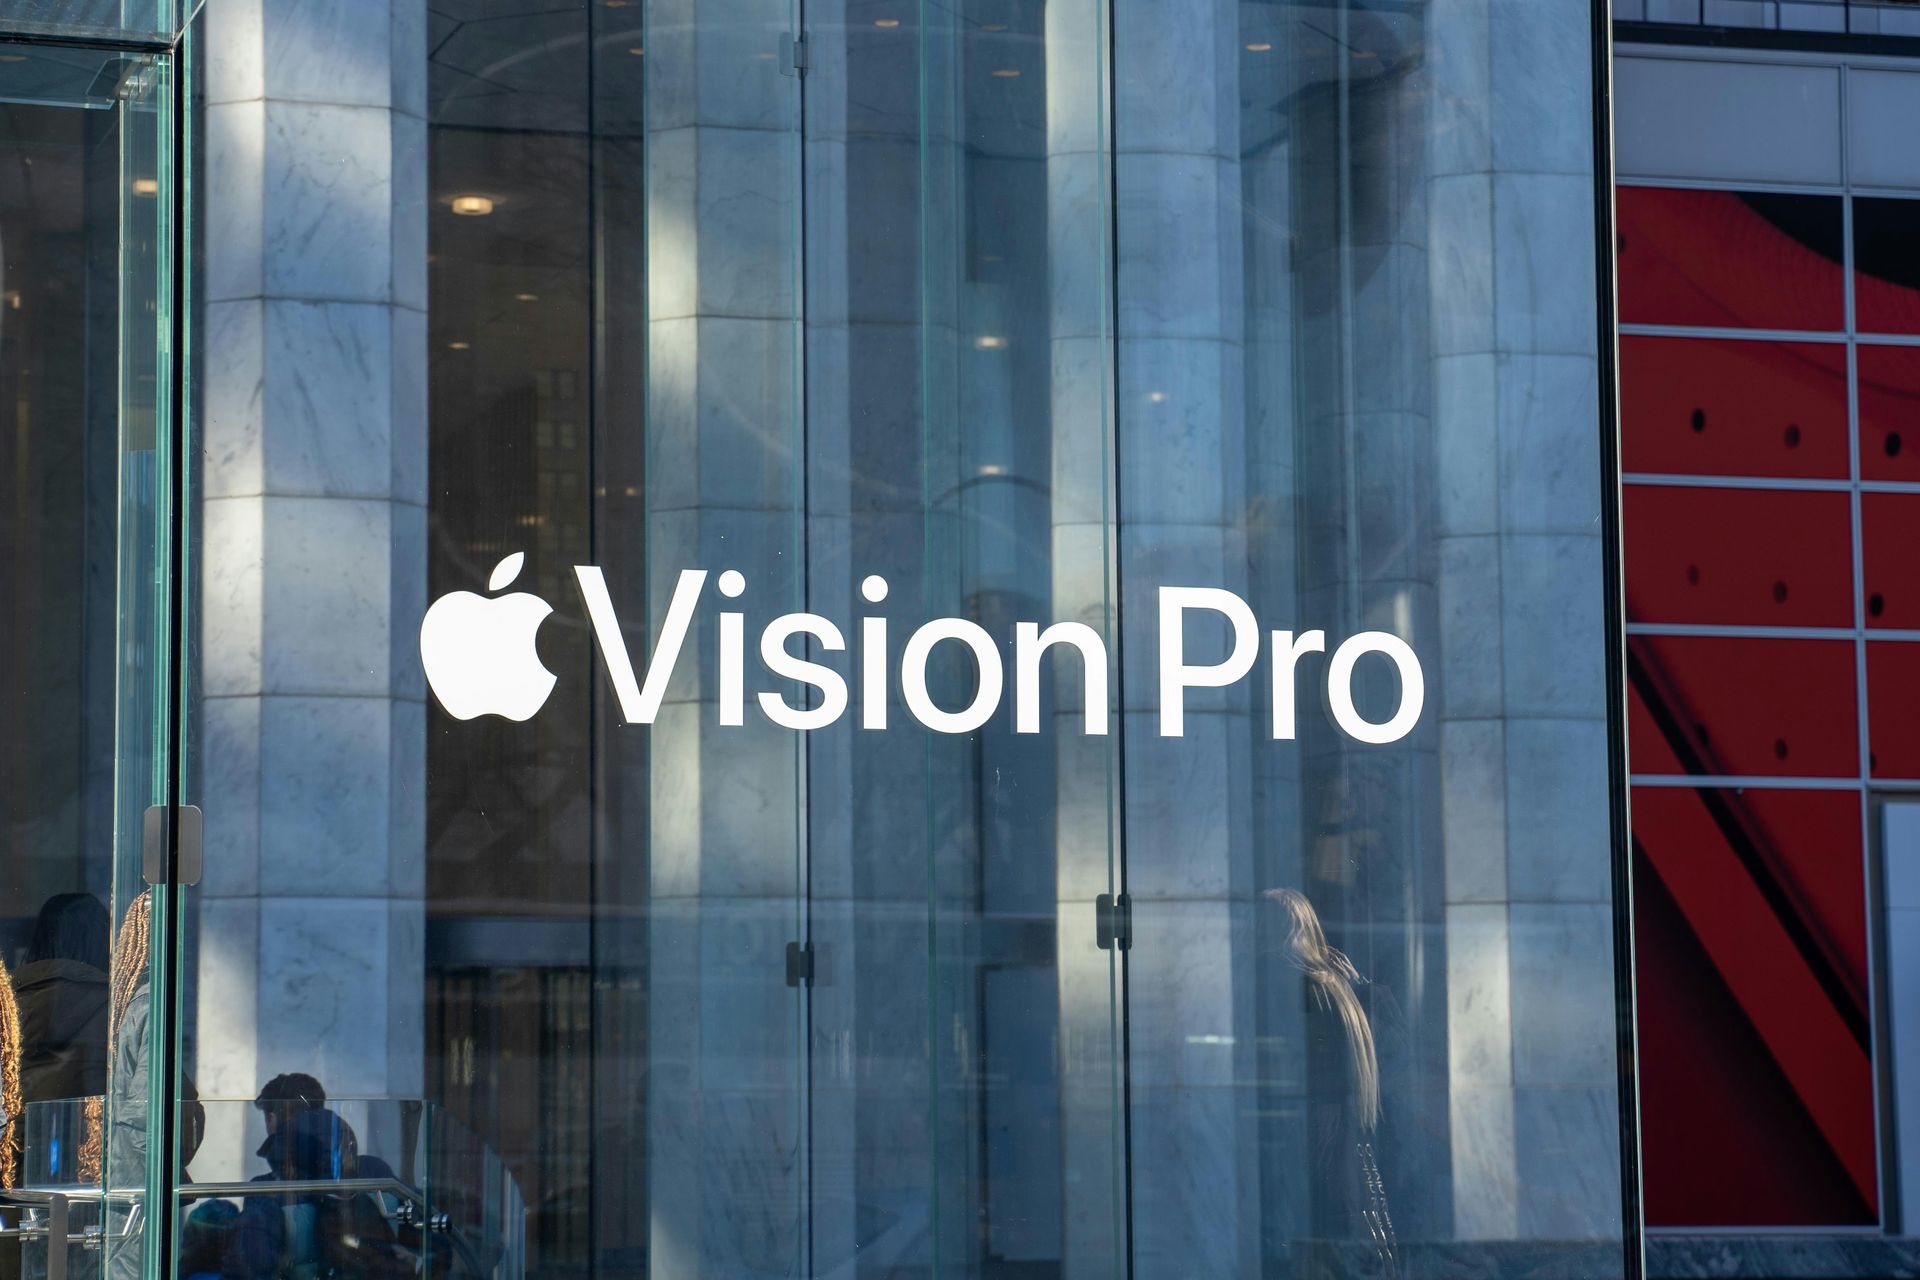 Vision Pro erfüllt die Verkaufserwartungen von Apple nicht